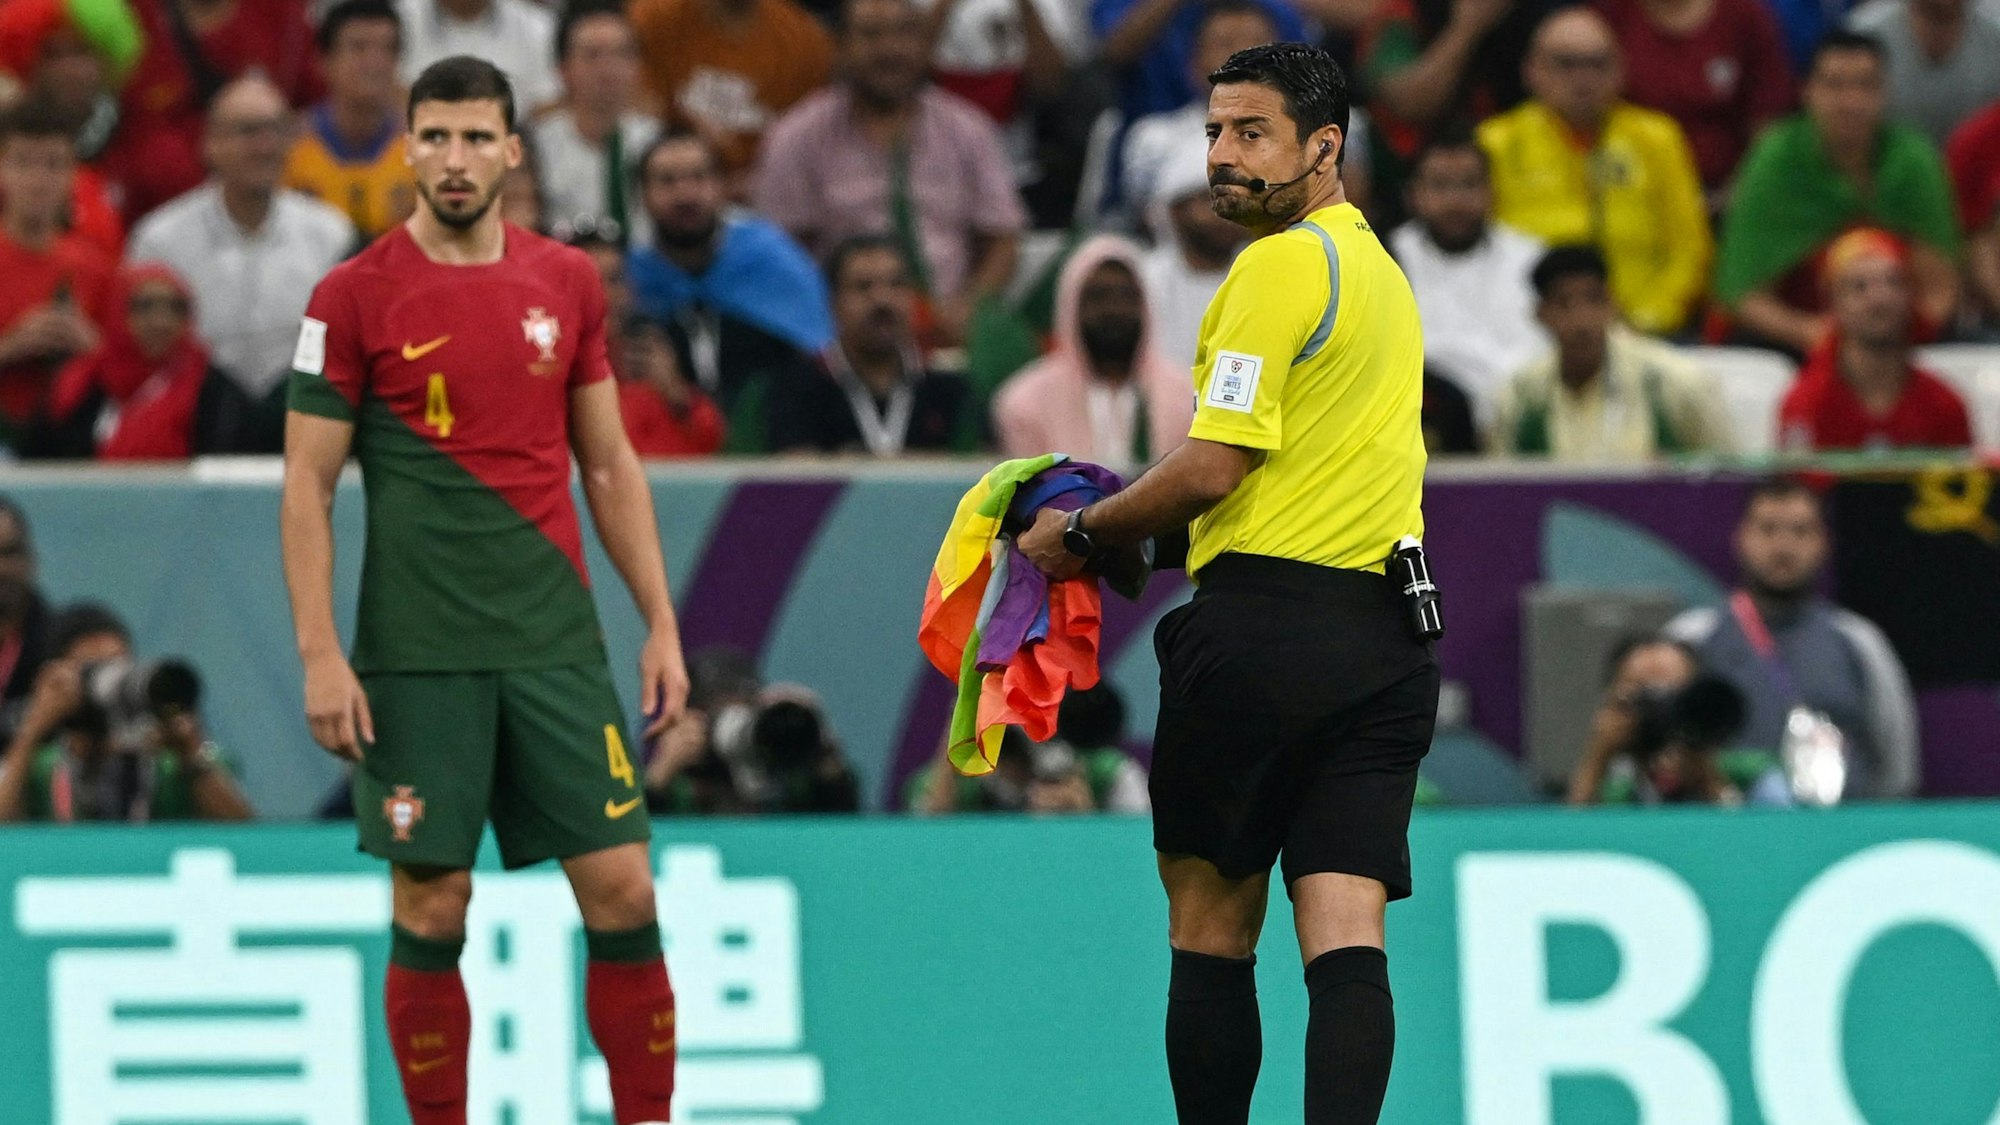 Beim Spiel Portugal gegen Uruguay hat ein Flitzer eine Regenbogenfahne vor den Füßen des Schiedsrichters fallen lassen. Der hebt sie auf und bringt sie an den Spielfeldrand.